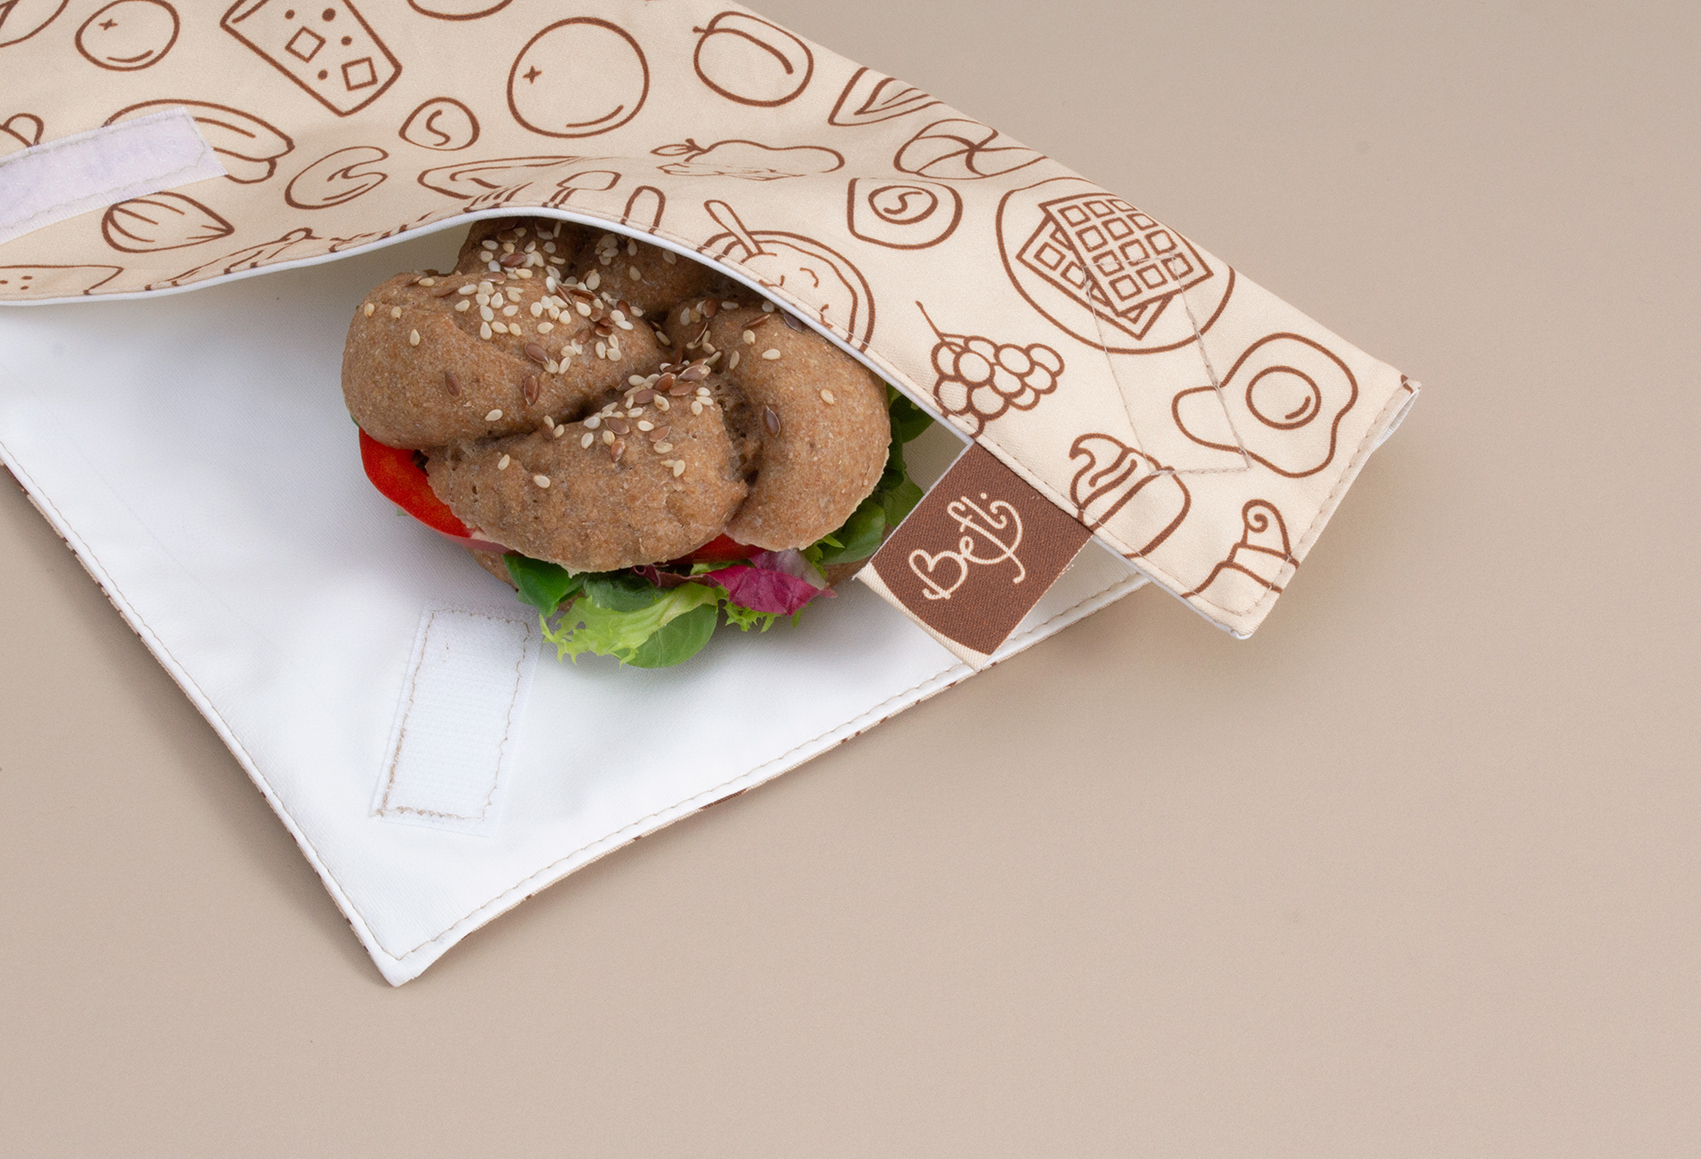 Befli Sandwich Packaging Design